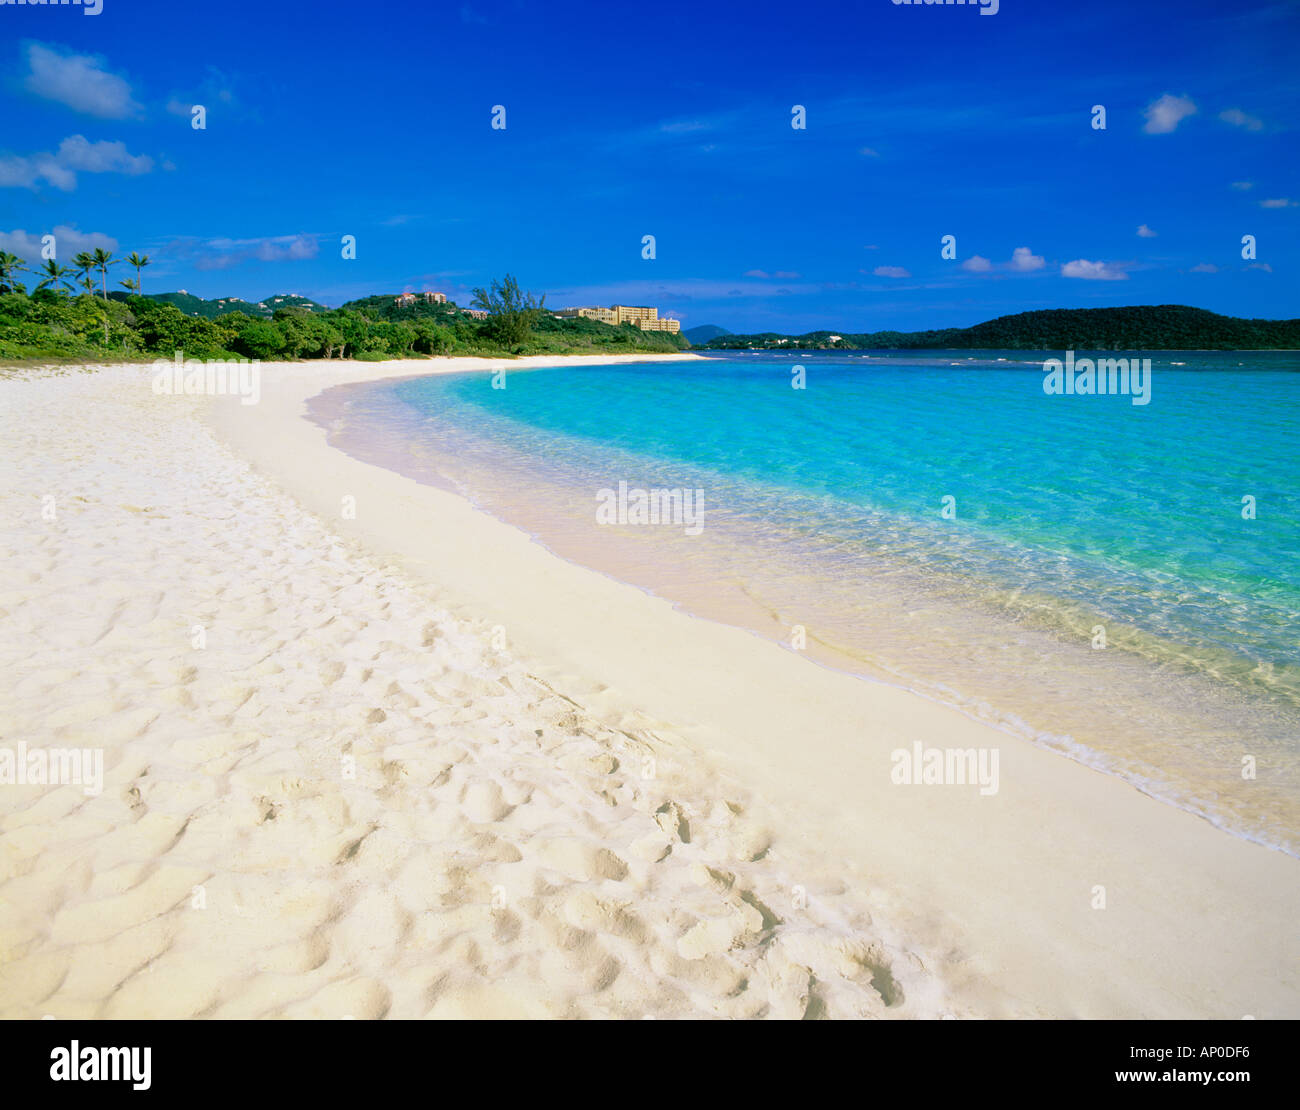 La sabbia bianca e il mare turchese al di sotto di un luminoso cielo blu a Lindquist Beach St Thomas Isole Vergini Americane Foto Stock